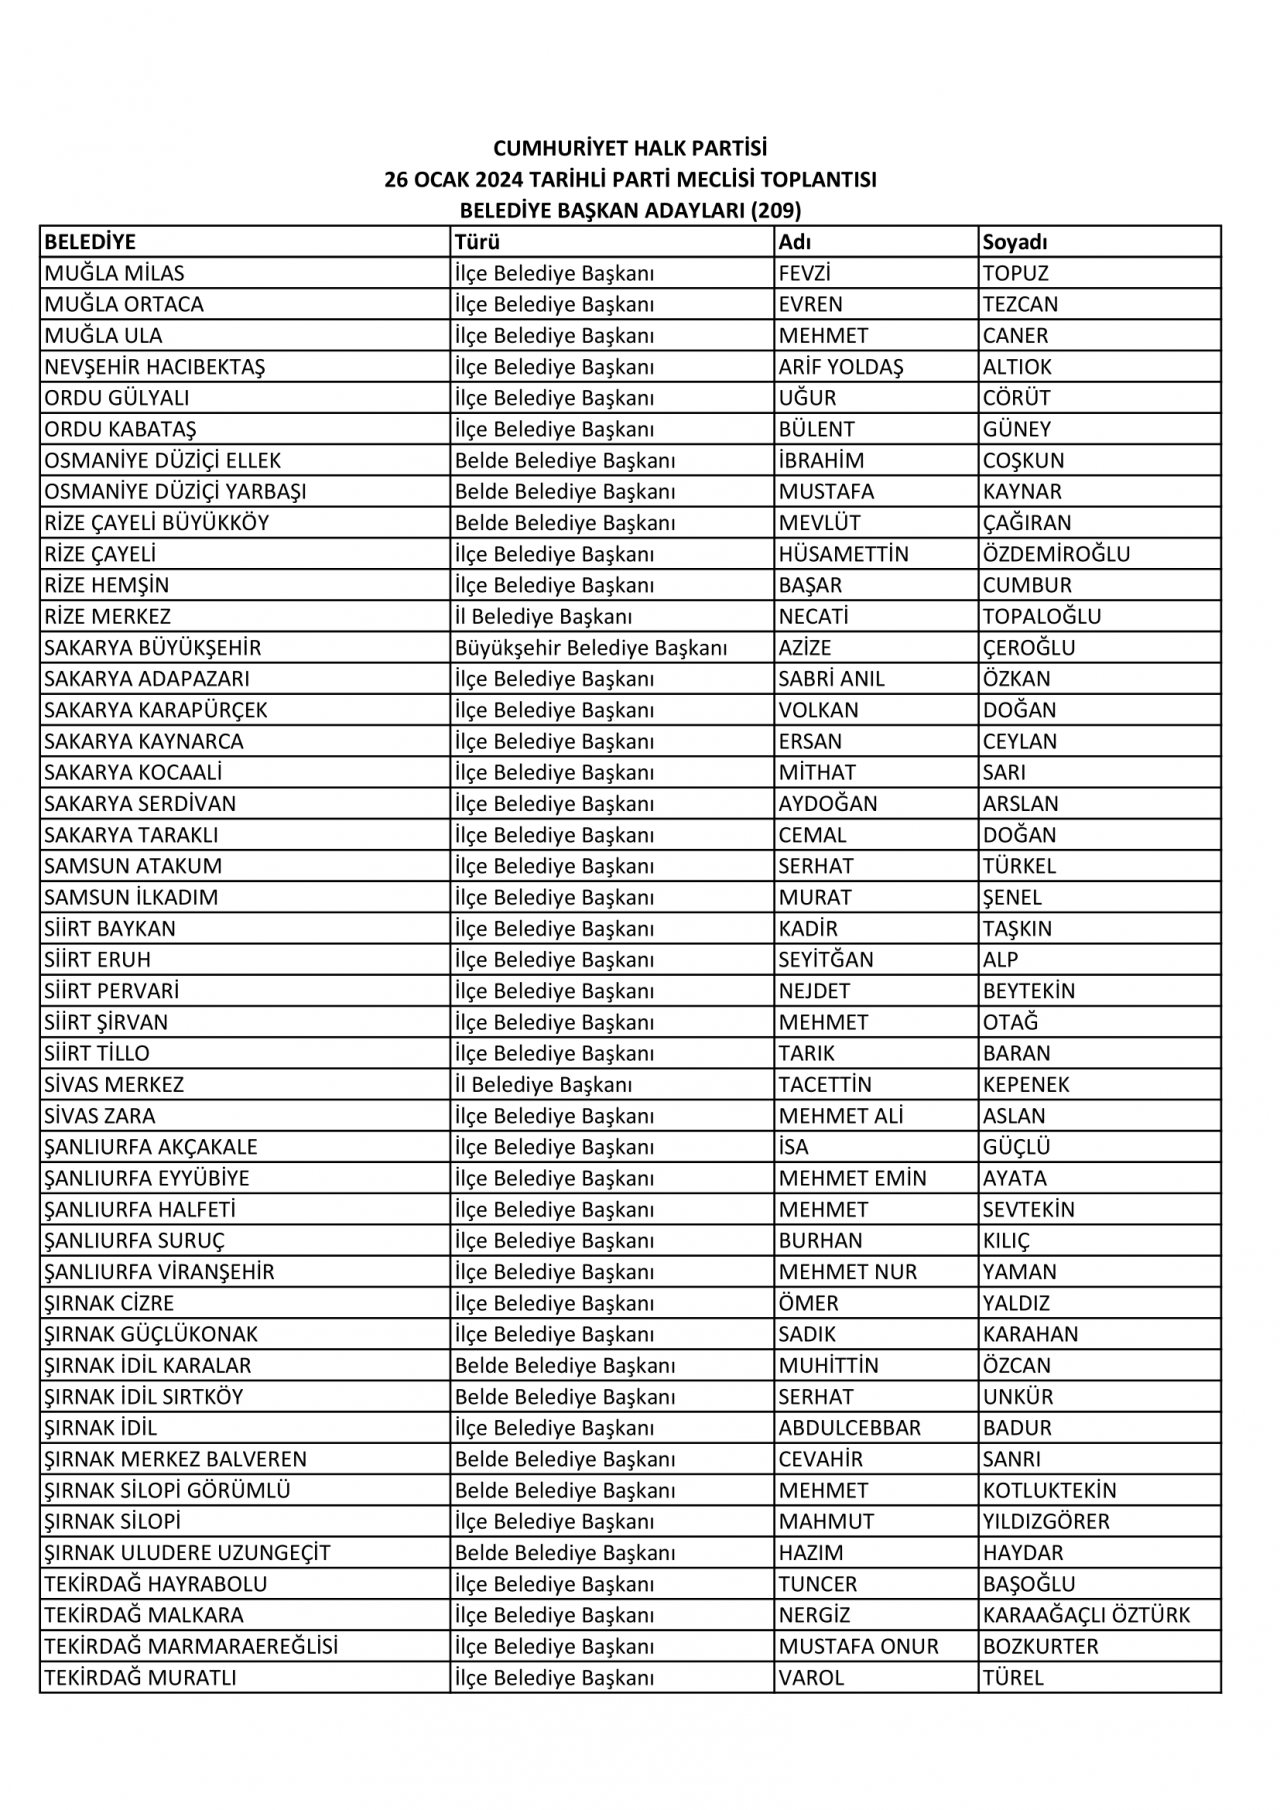 CHP PM'den geçen belediye başkan adayları isimleri